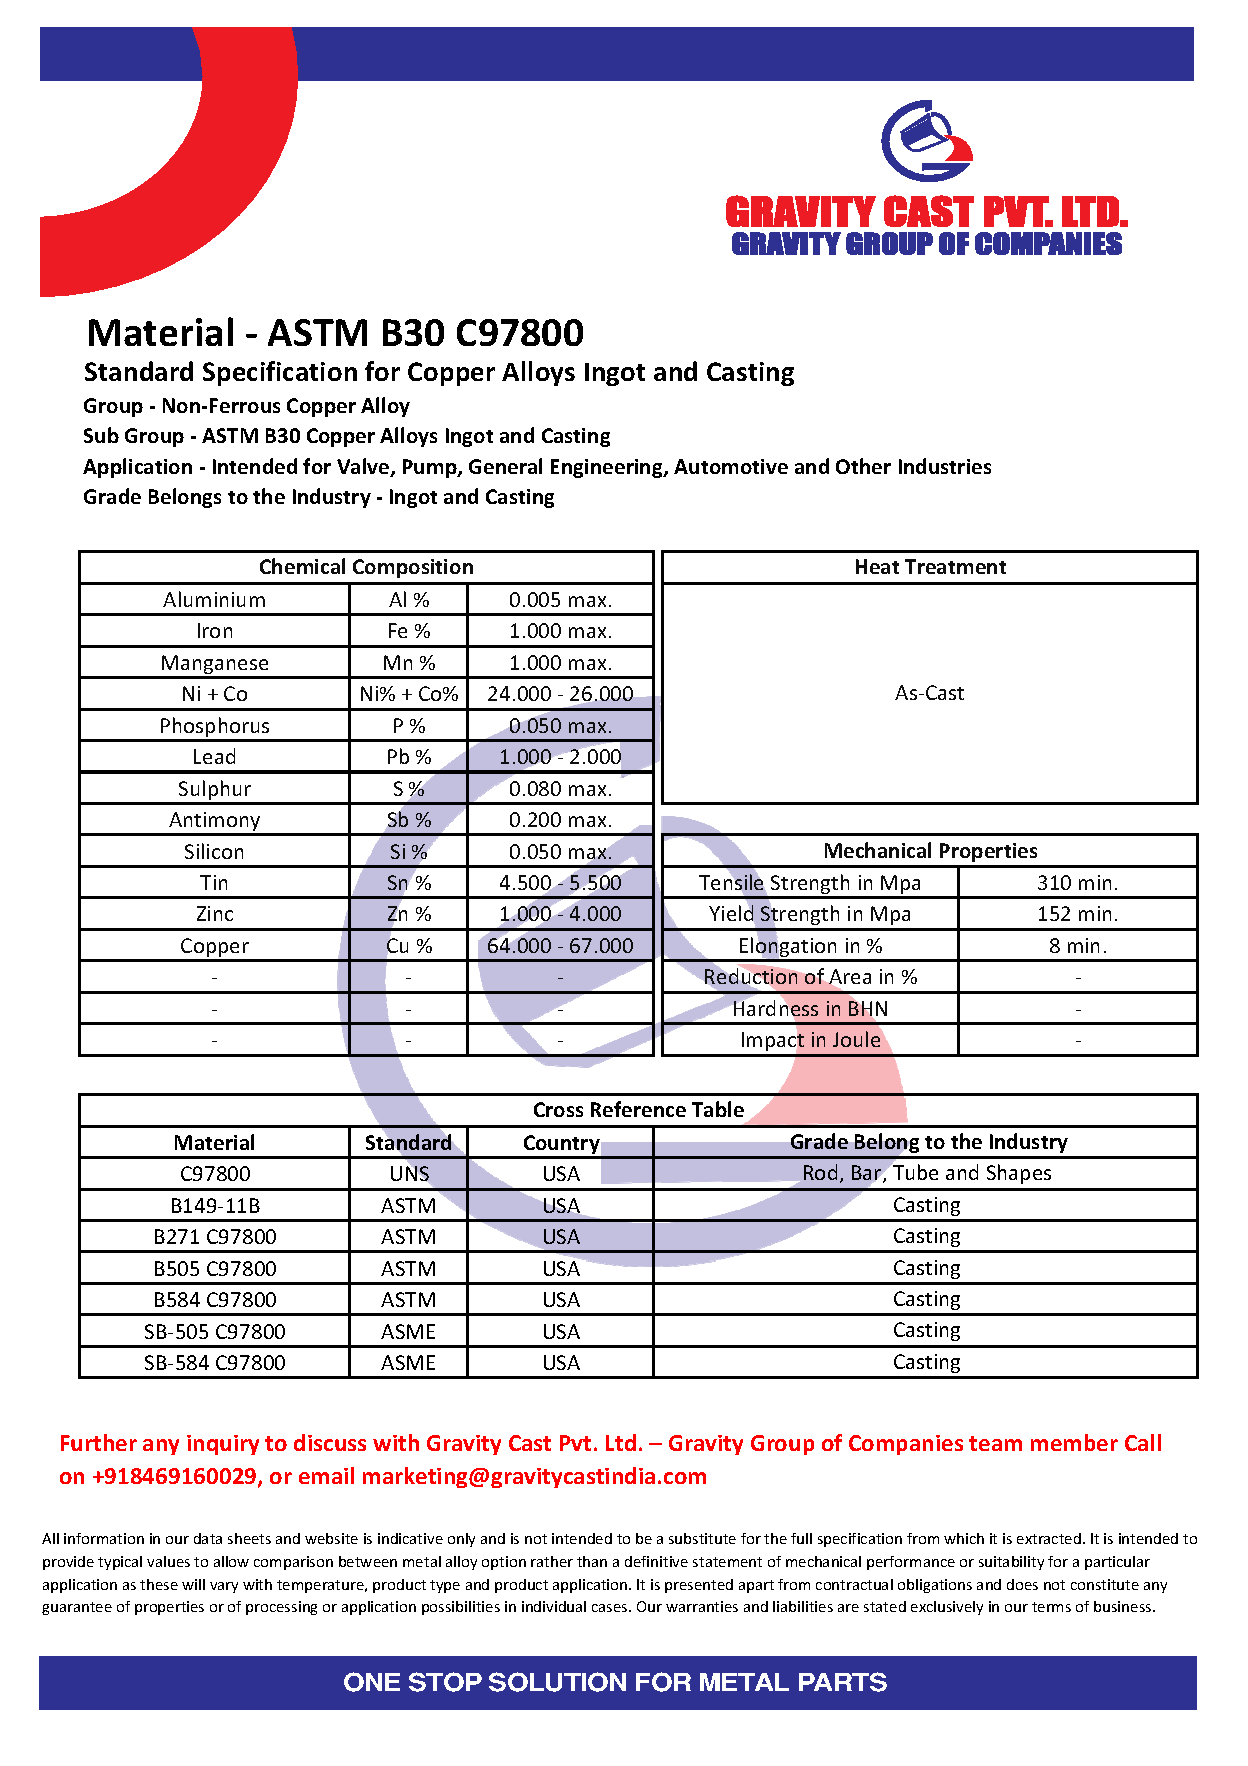 ASTM B30 C97800.pdf